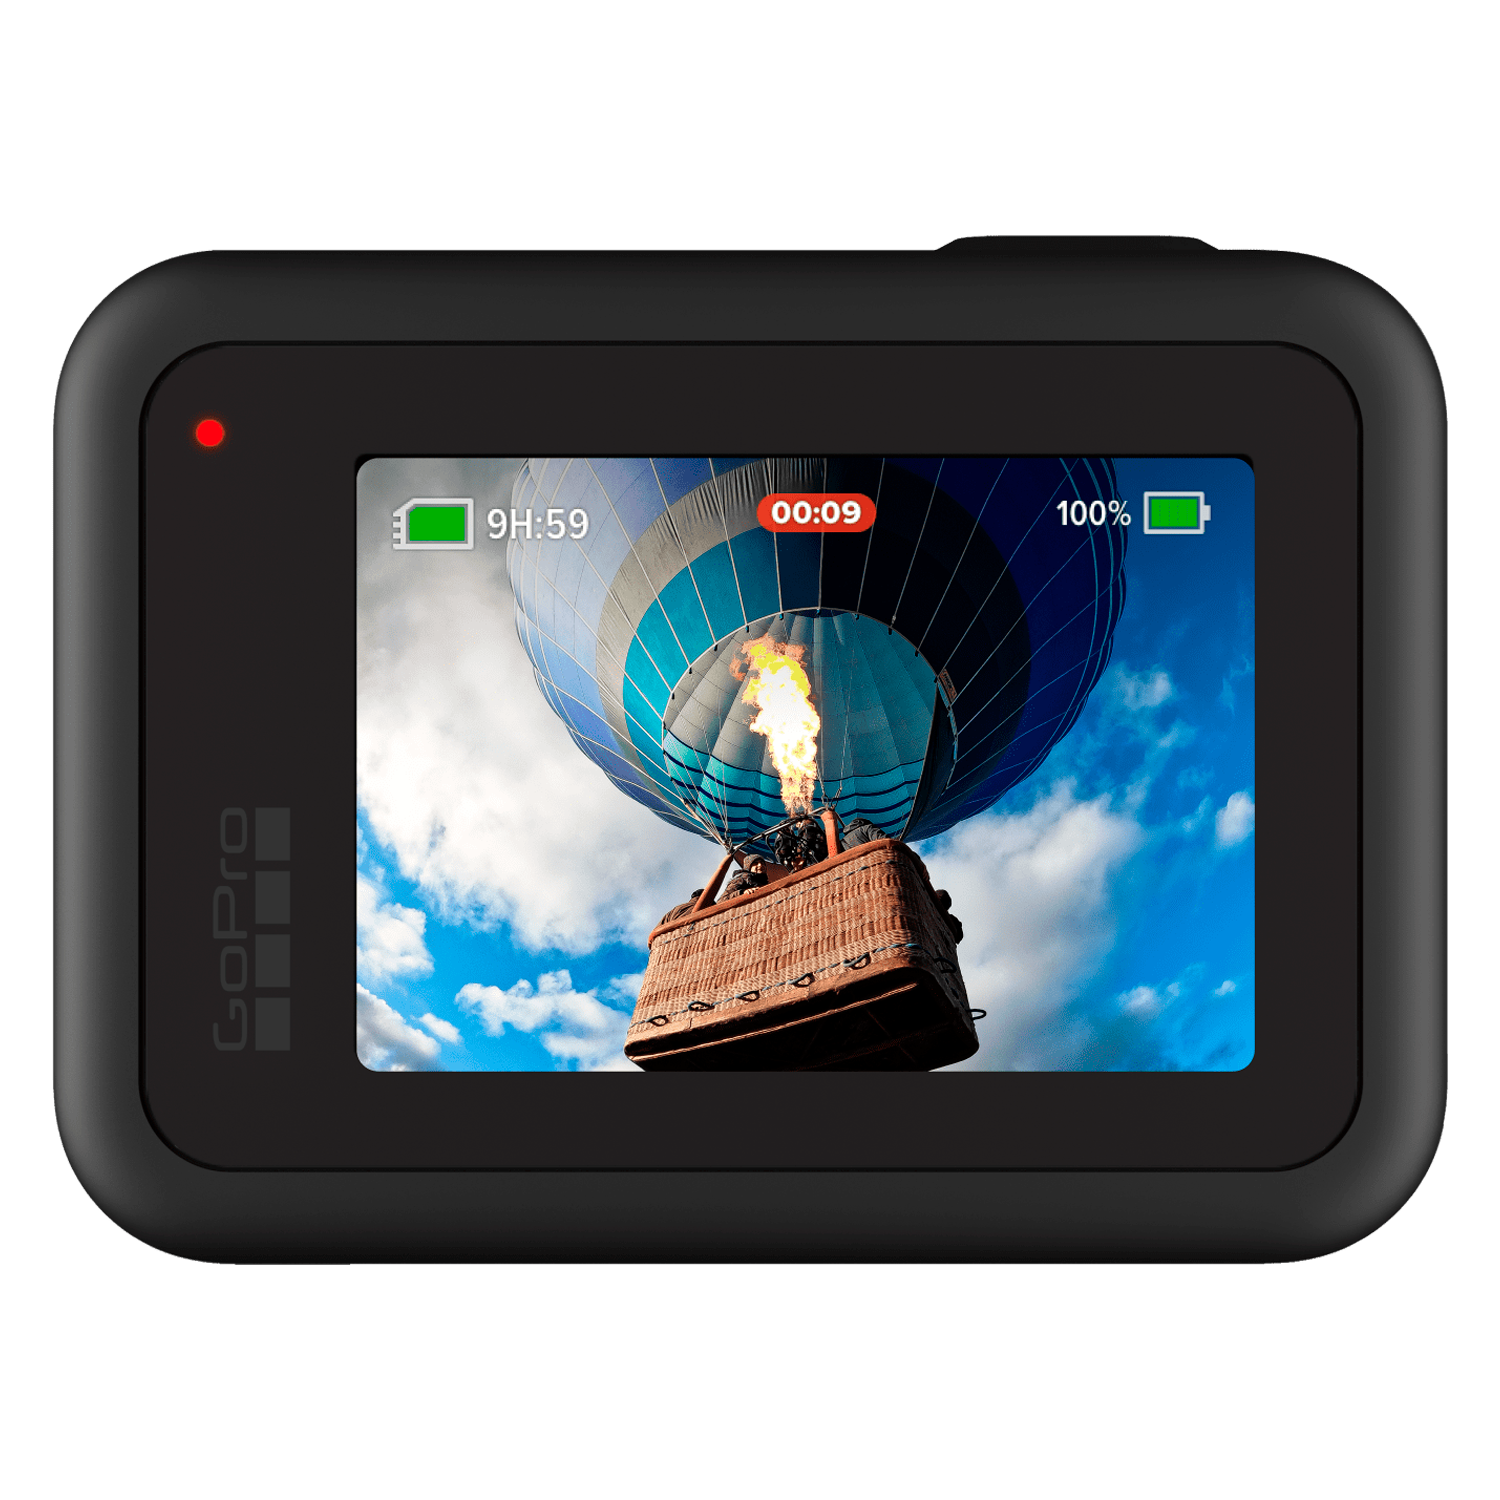 Câmera de Ação GoPro Hero 8 4K CHDHX-802-RW - Preto